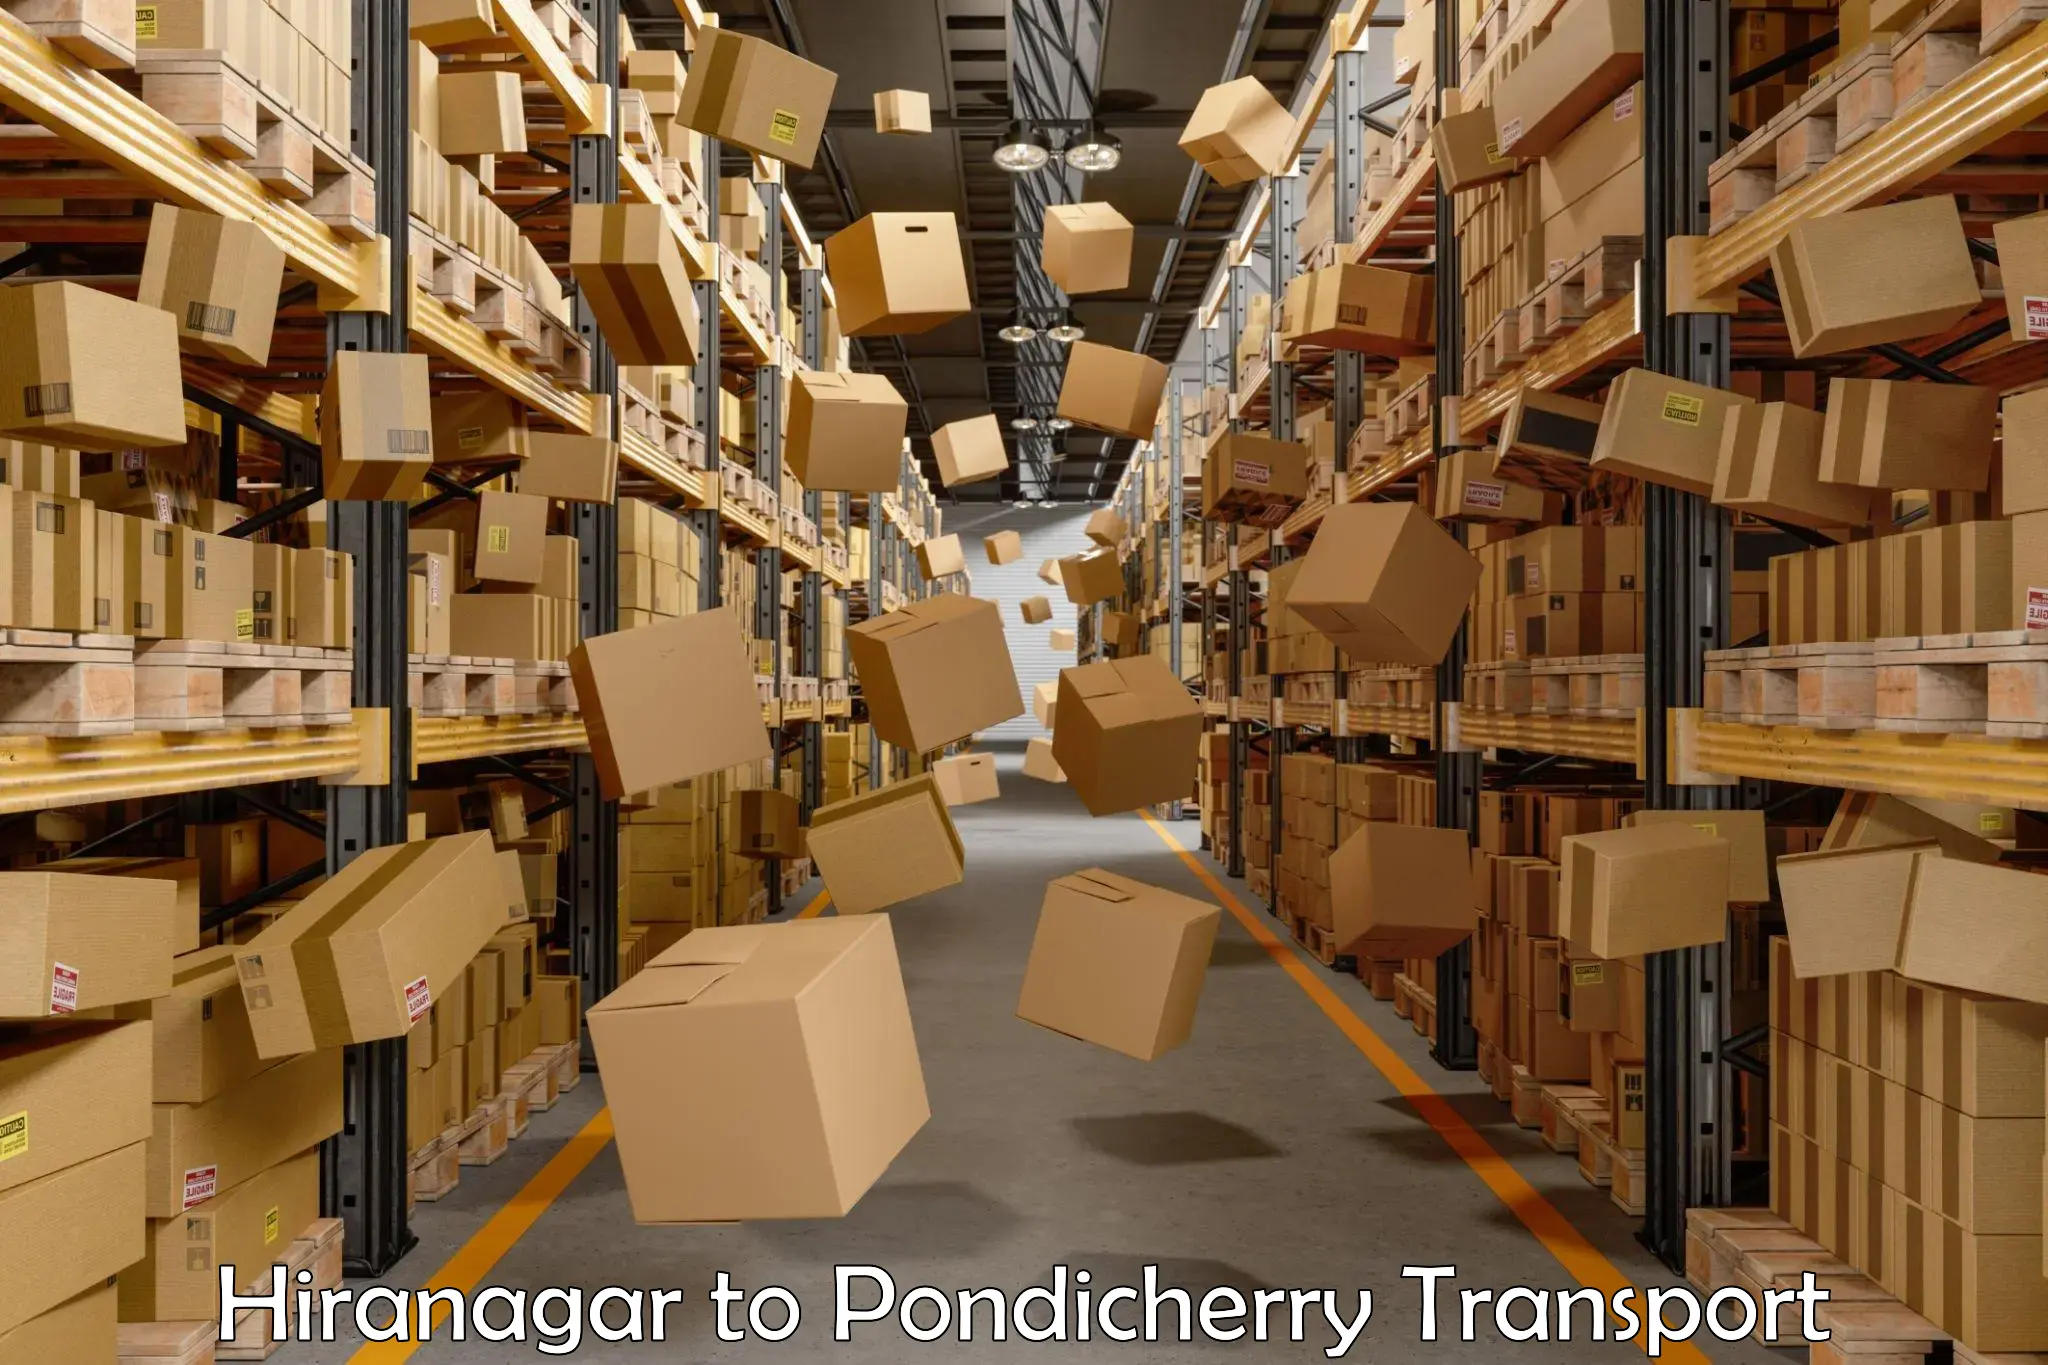 Nearest transport service Hiranagar to Pondicherry University